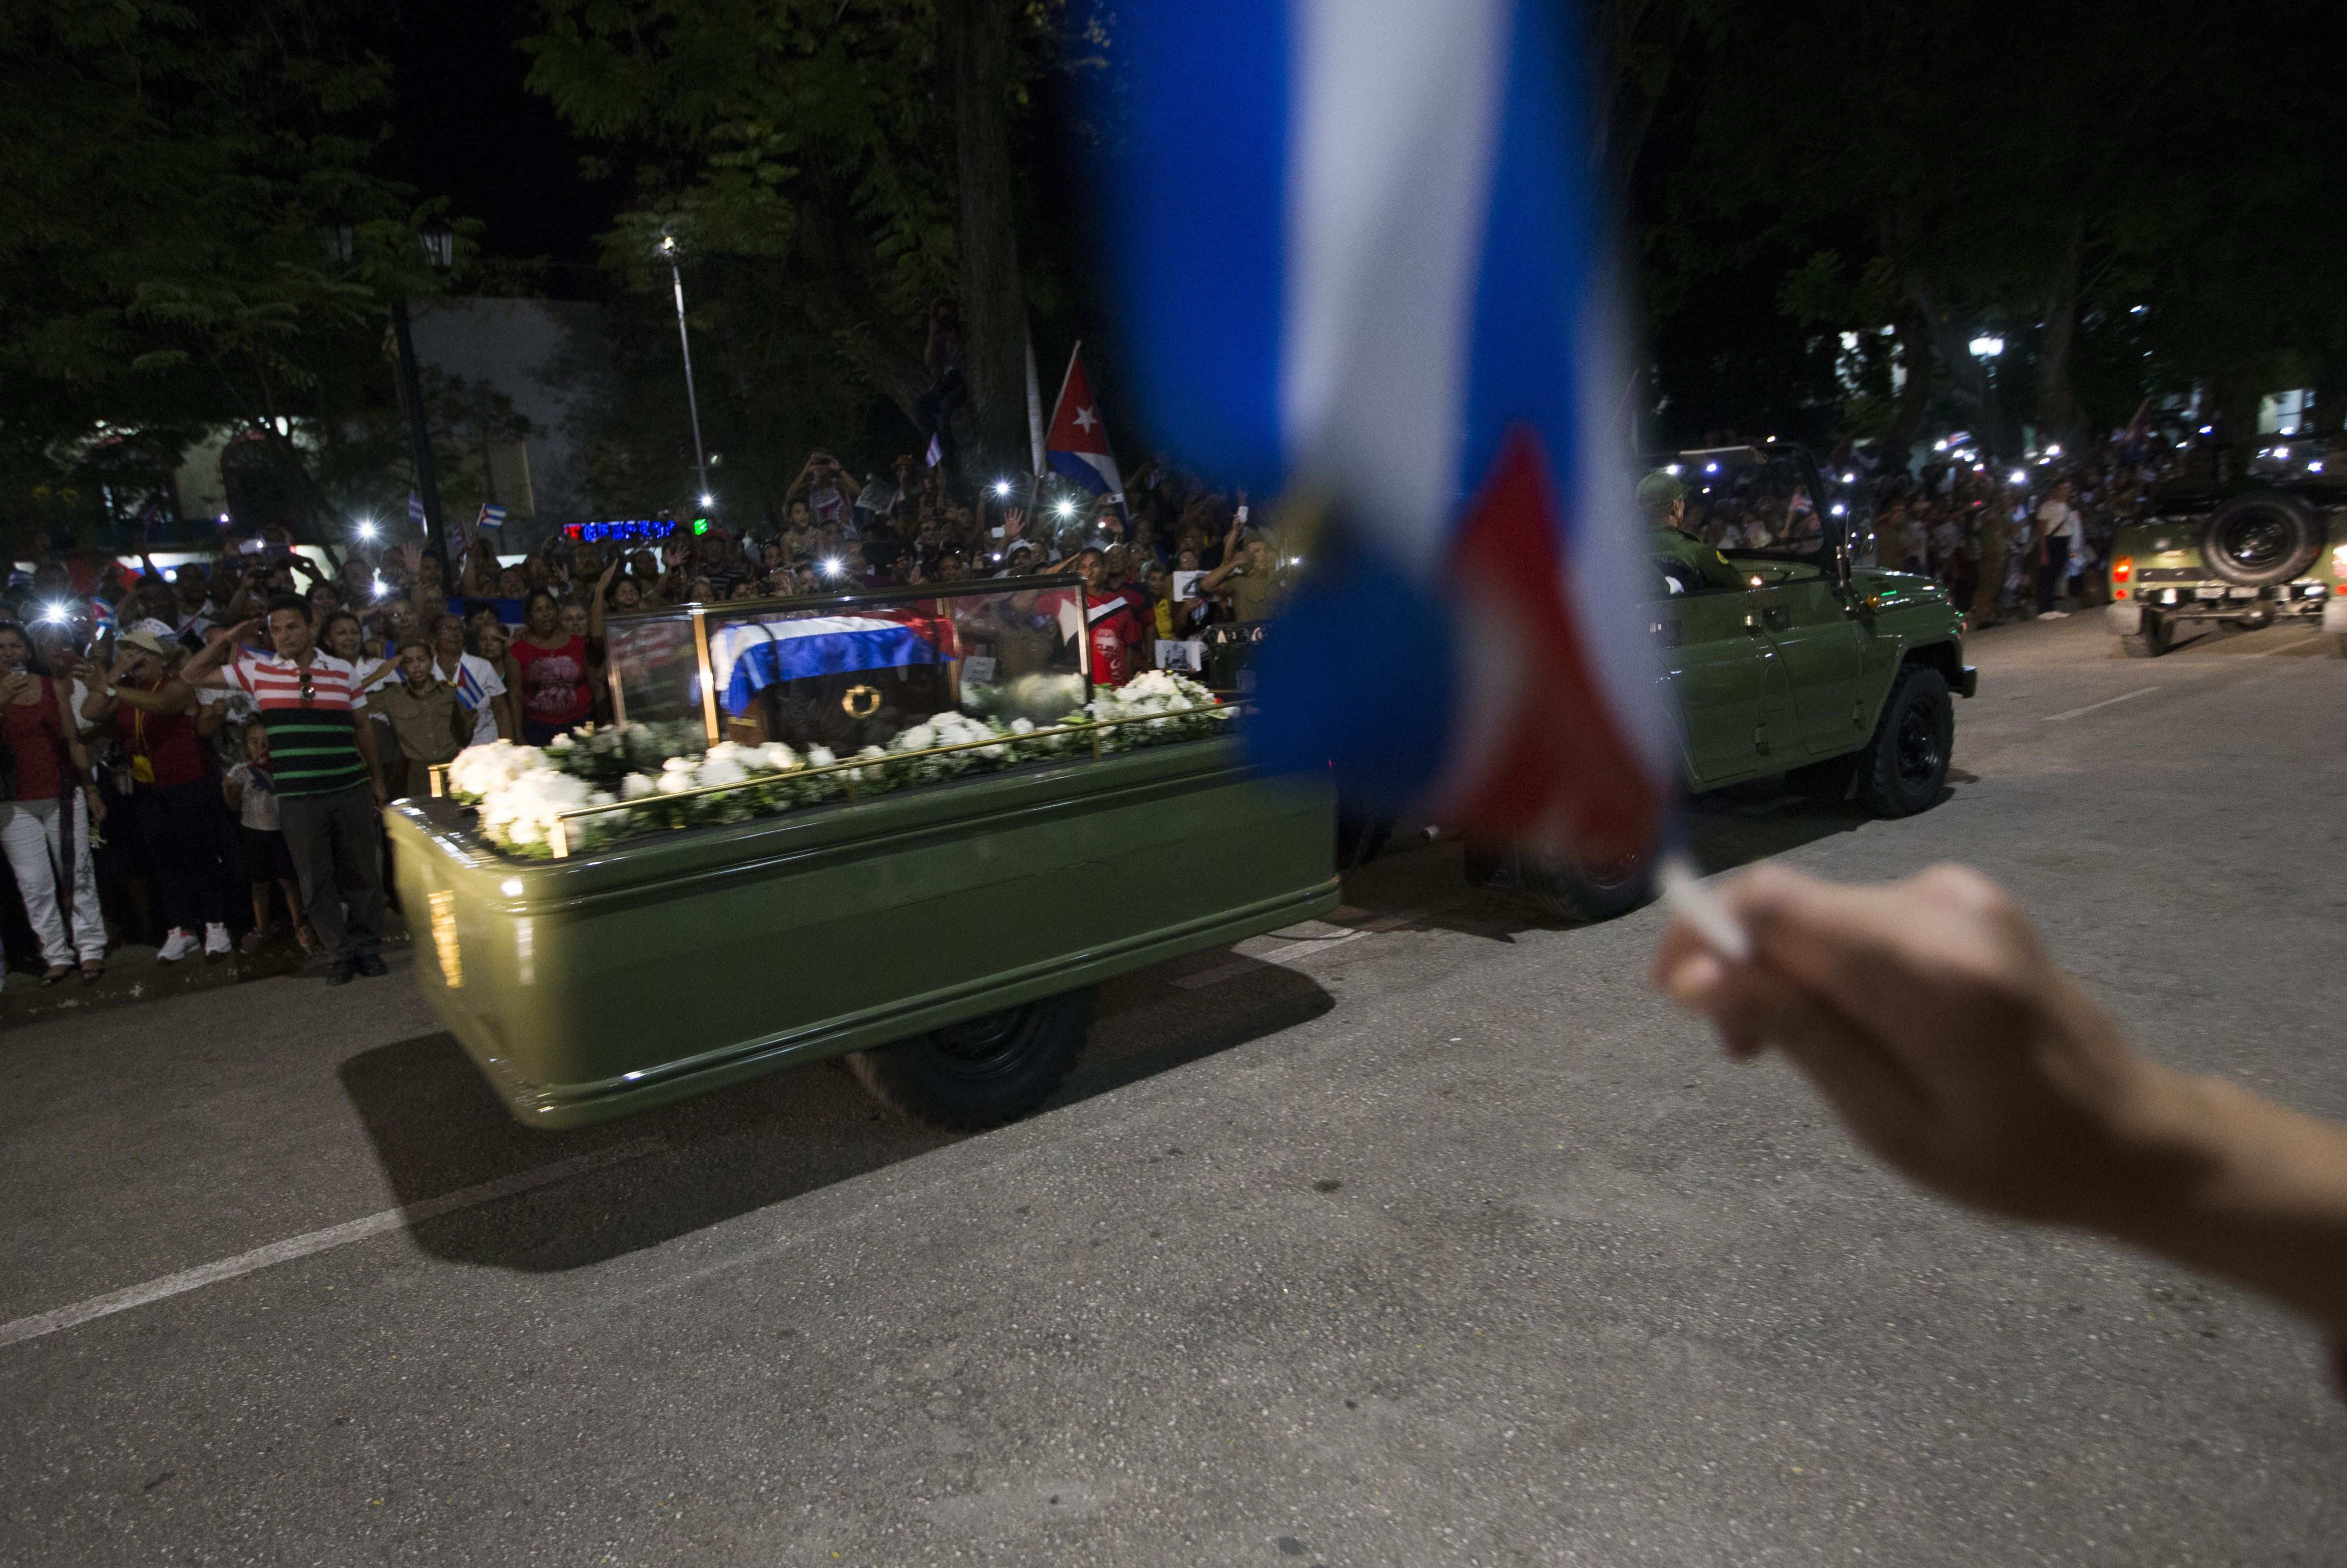 Les cendres de Fidel Castro finalitzen viatge a Santiago de Cuba